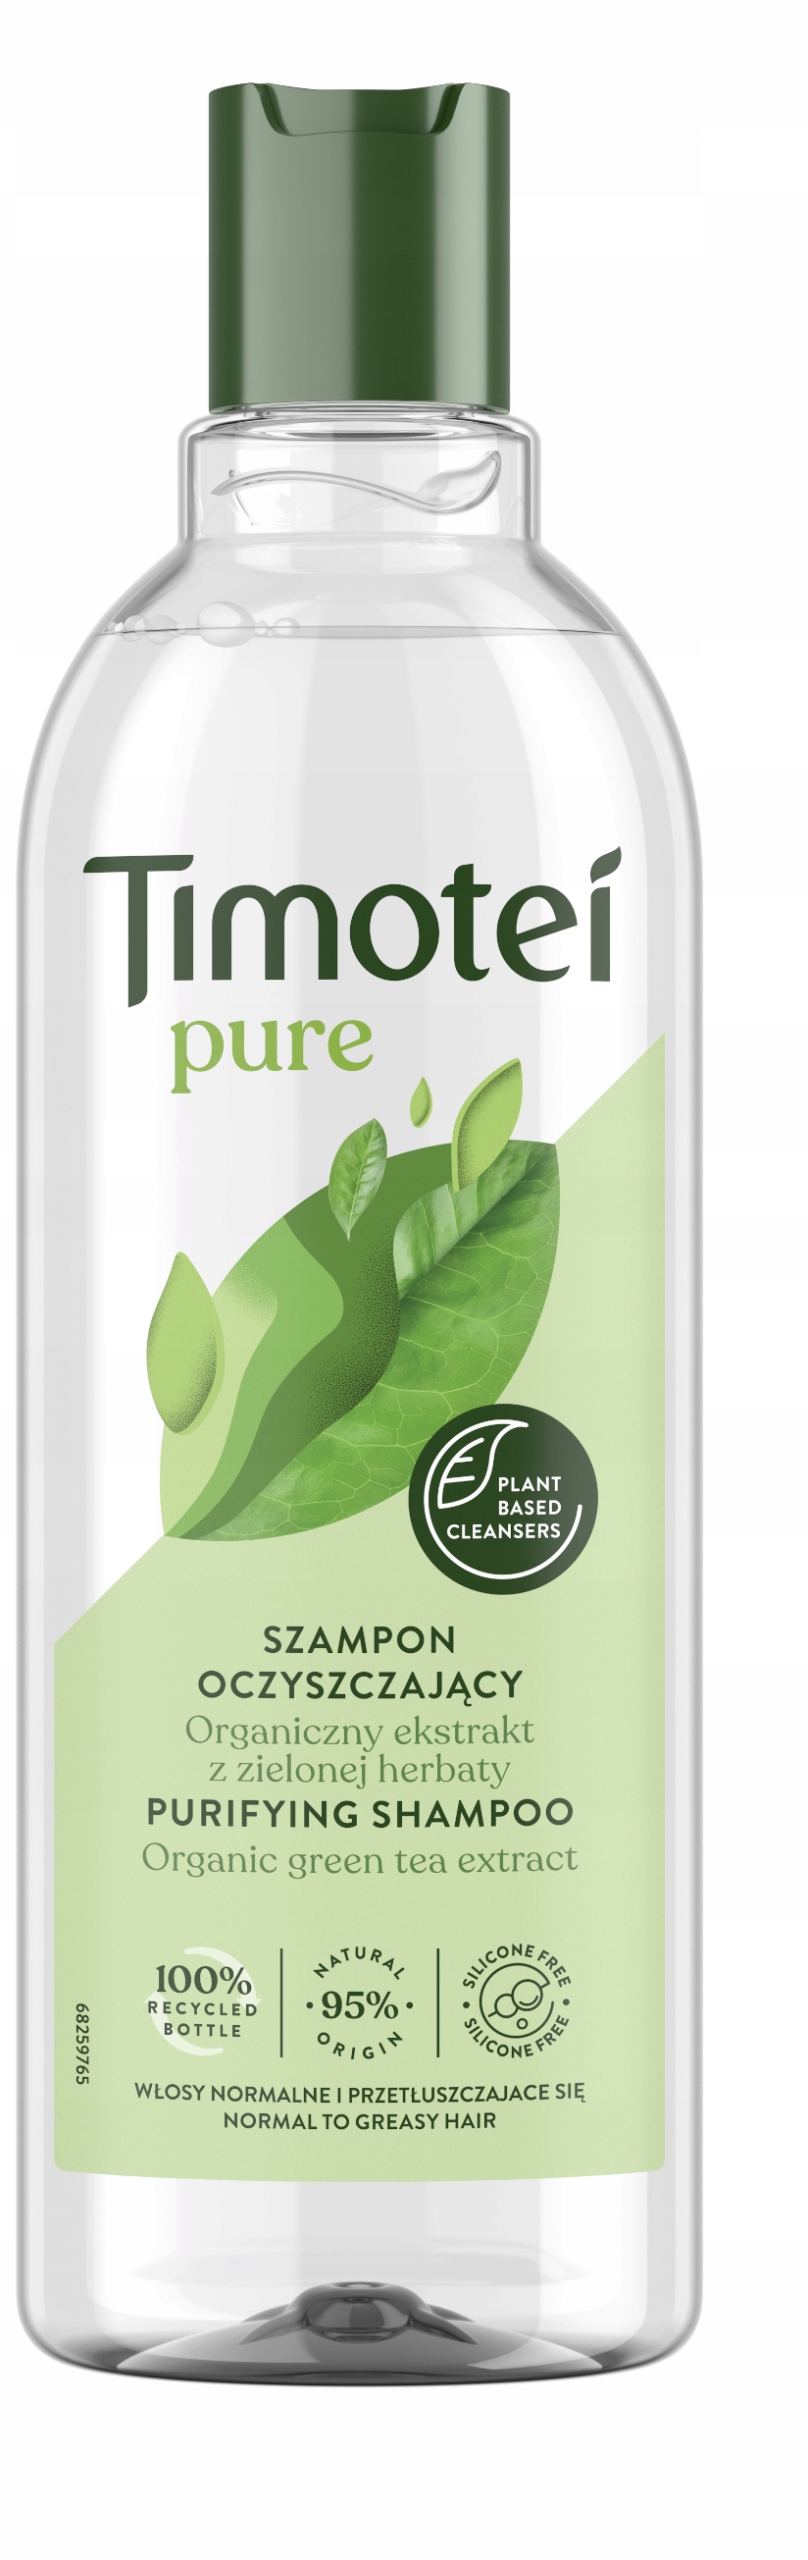 2018 timotej szampon polska firma